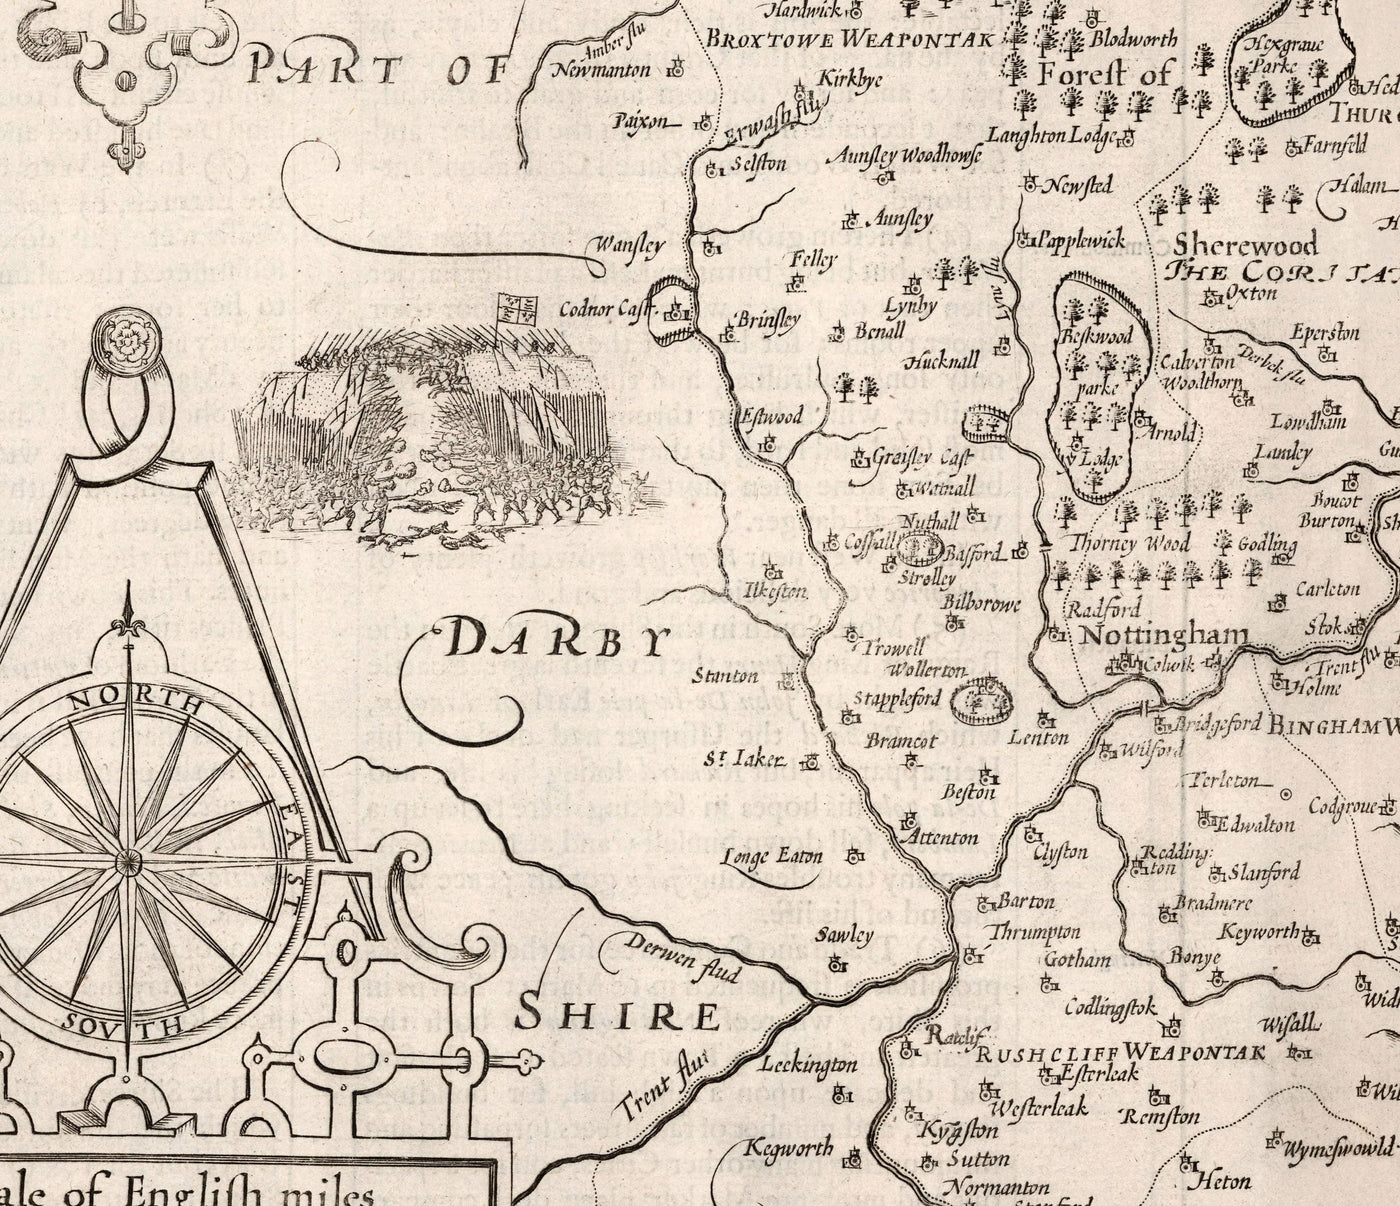 Viejo mapa de Nottinghamshire, 1611 de John Speed ​​- Nottingham, Mansfield, Newark, Workop, Forest Sherwood